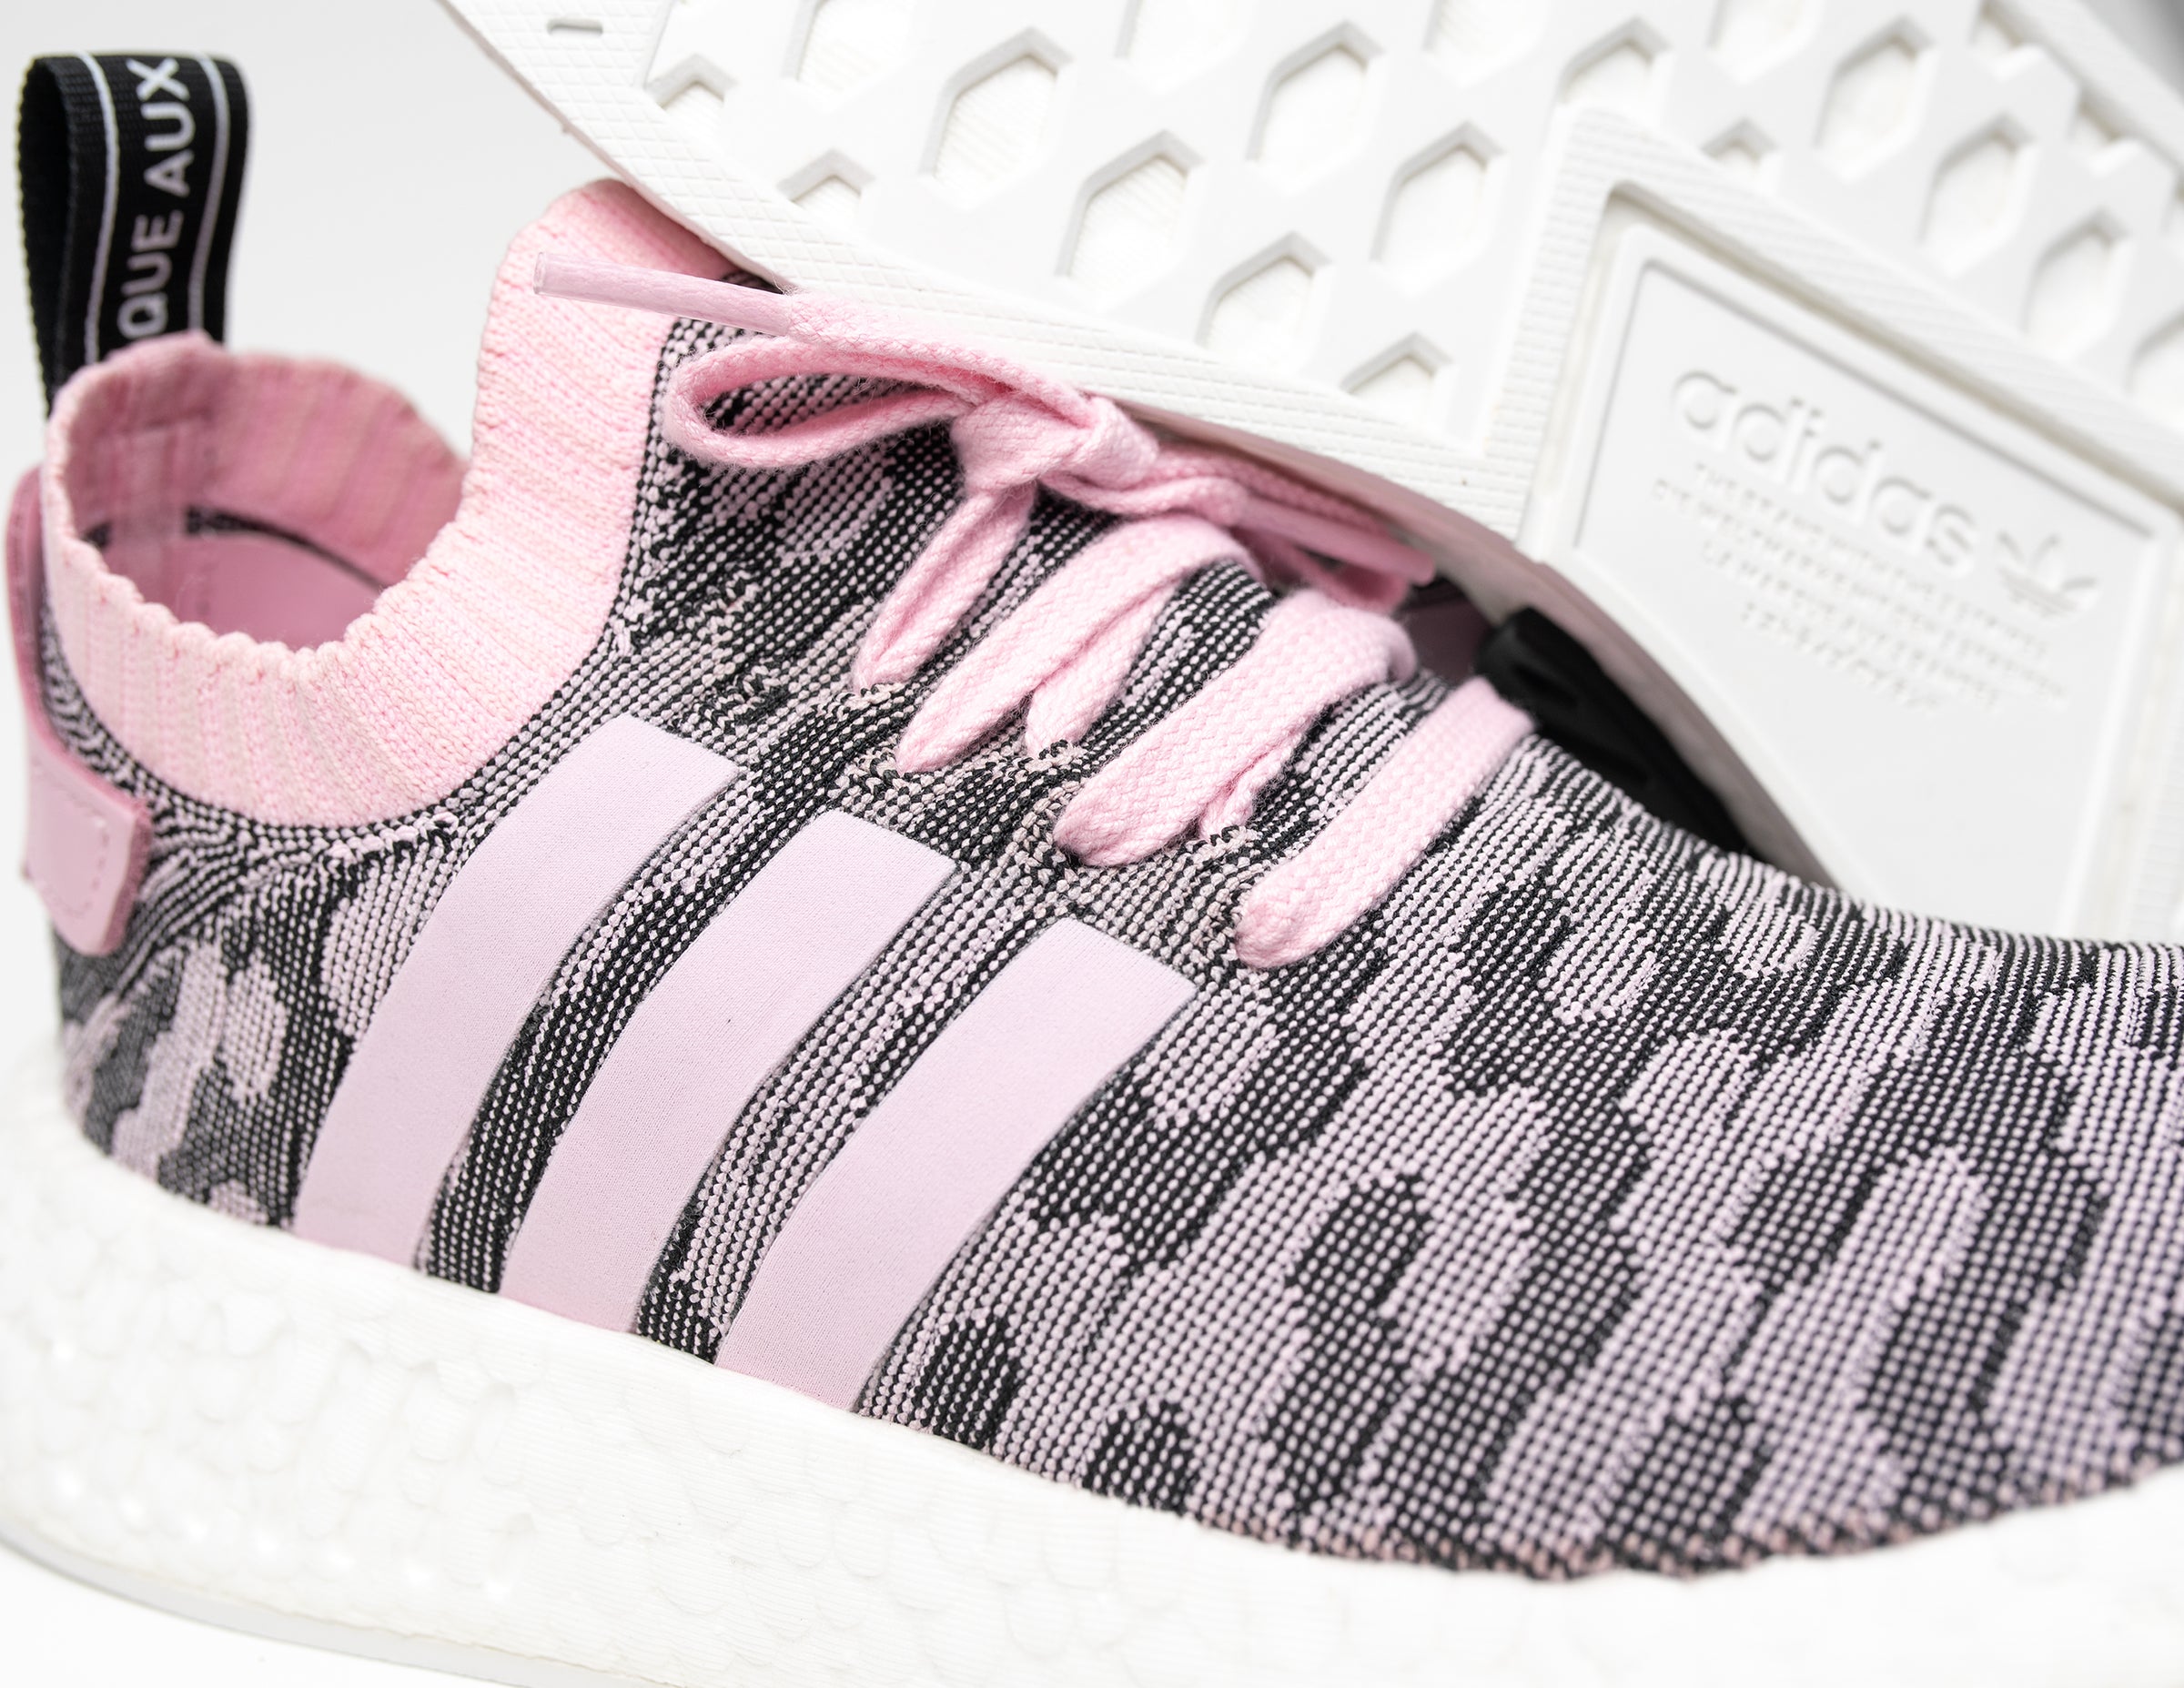 Enfriarse Puntualidad estudiar Adidas NMD R2 Primeknit Wonder Pink | Women's Shoes